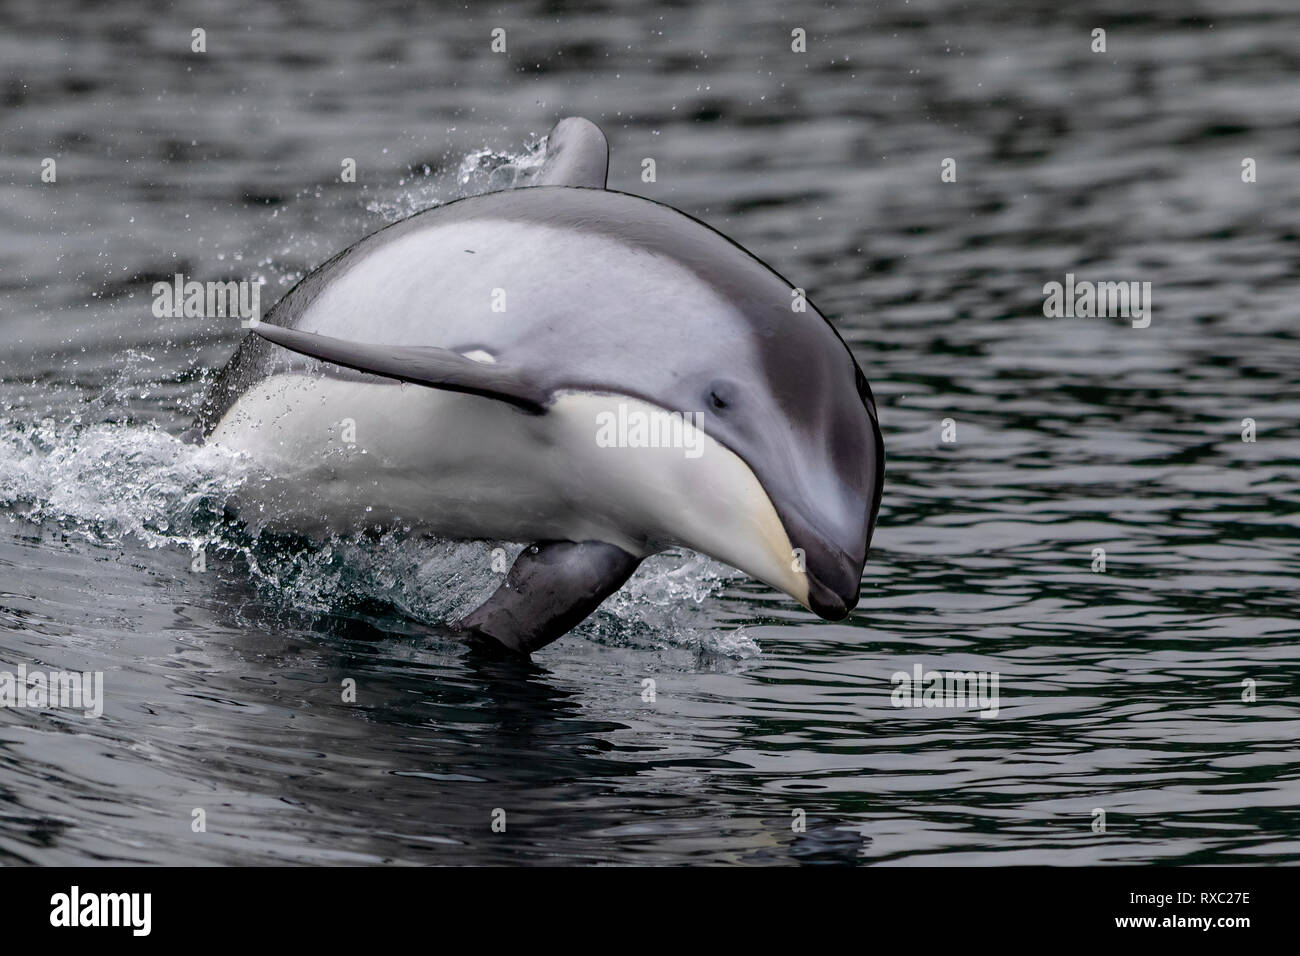 Caras blanco del Pacífico (Lagenorhynchus obliquidens) de delfines saltando en el archipiélago Broughton, Territorio de las Primeras Naciones, British Columbia, Canadá. Foto de stock